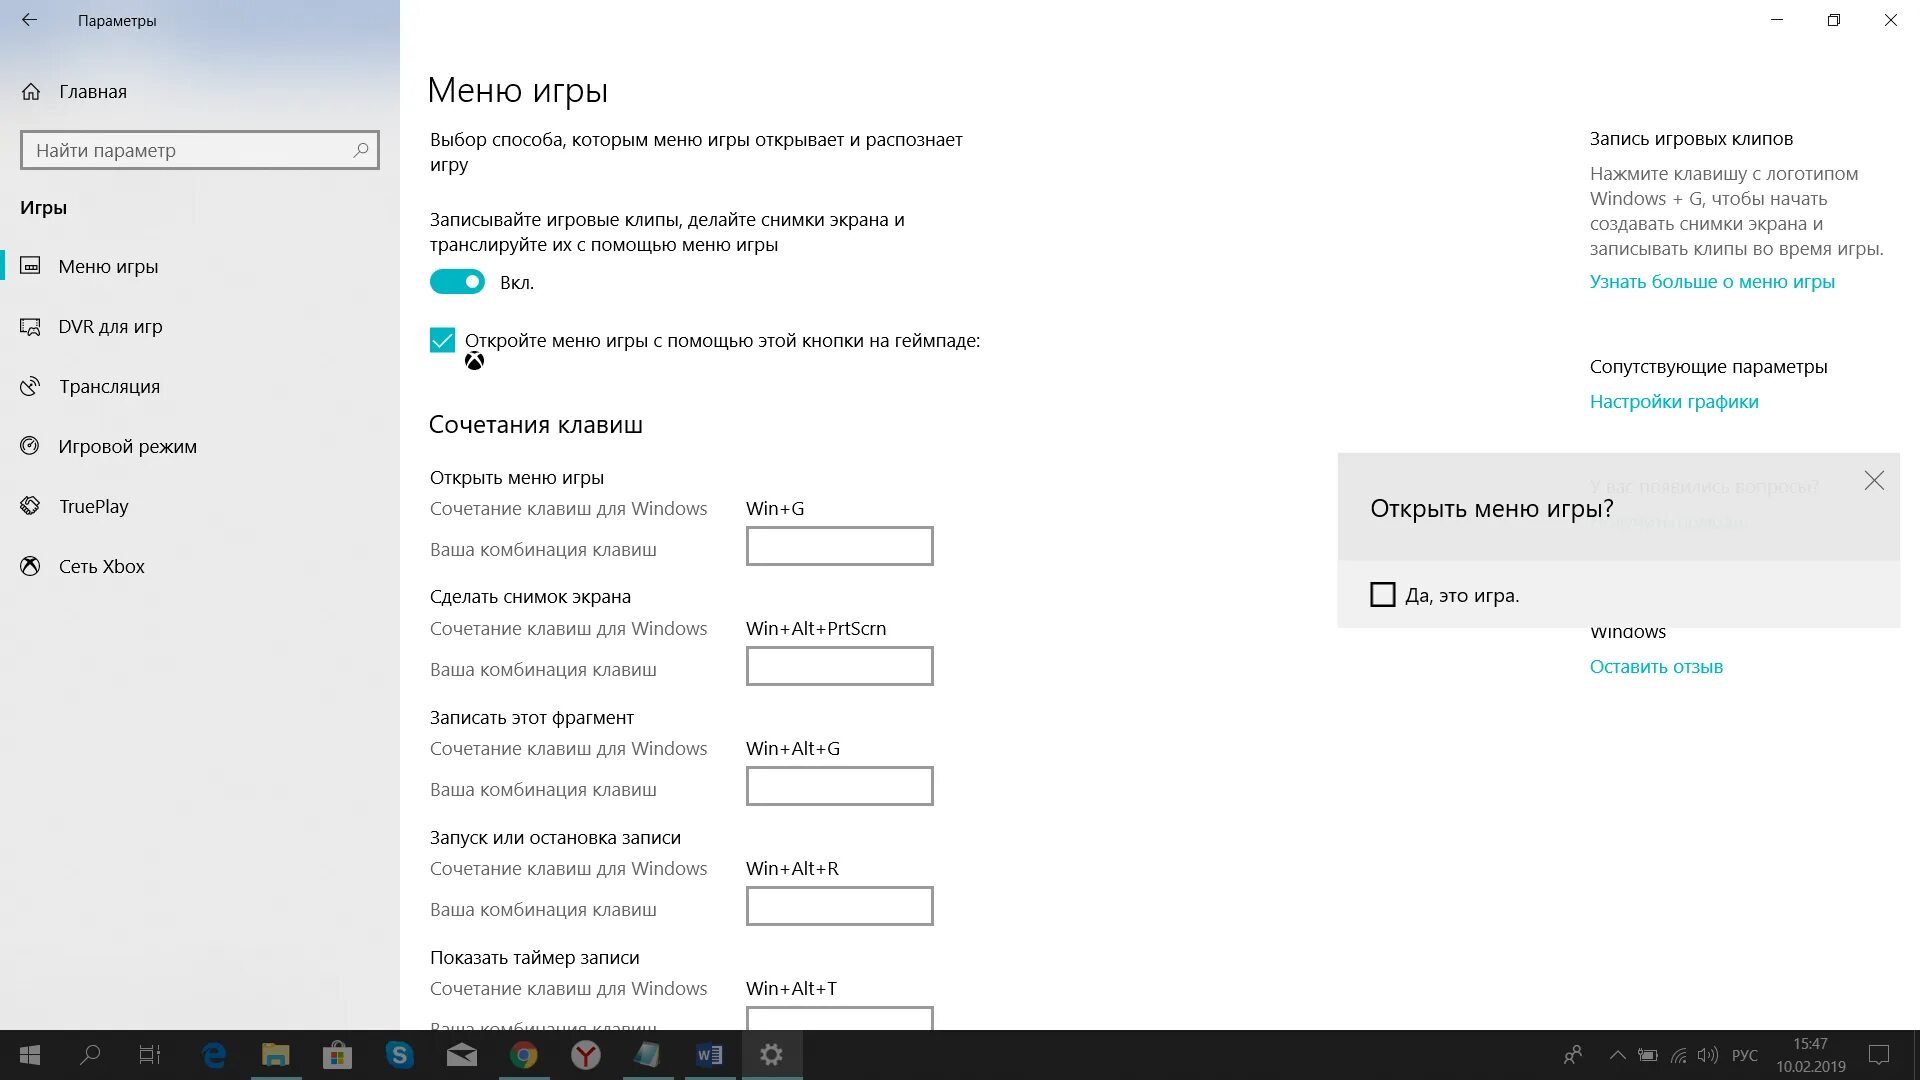 Клавиши для записи экрана Windows 7. Запись экрана на виндовс. Запись экрана Windows 10 со звуком. Программа для записи экрана виндовс 10. Захват видео windows 10